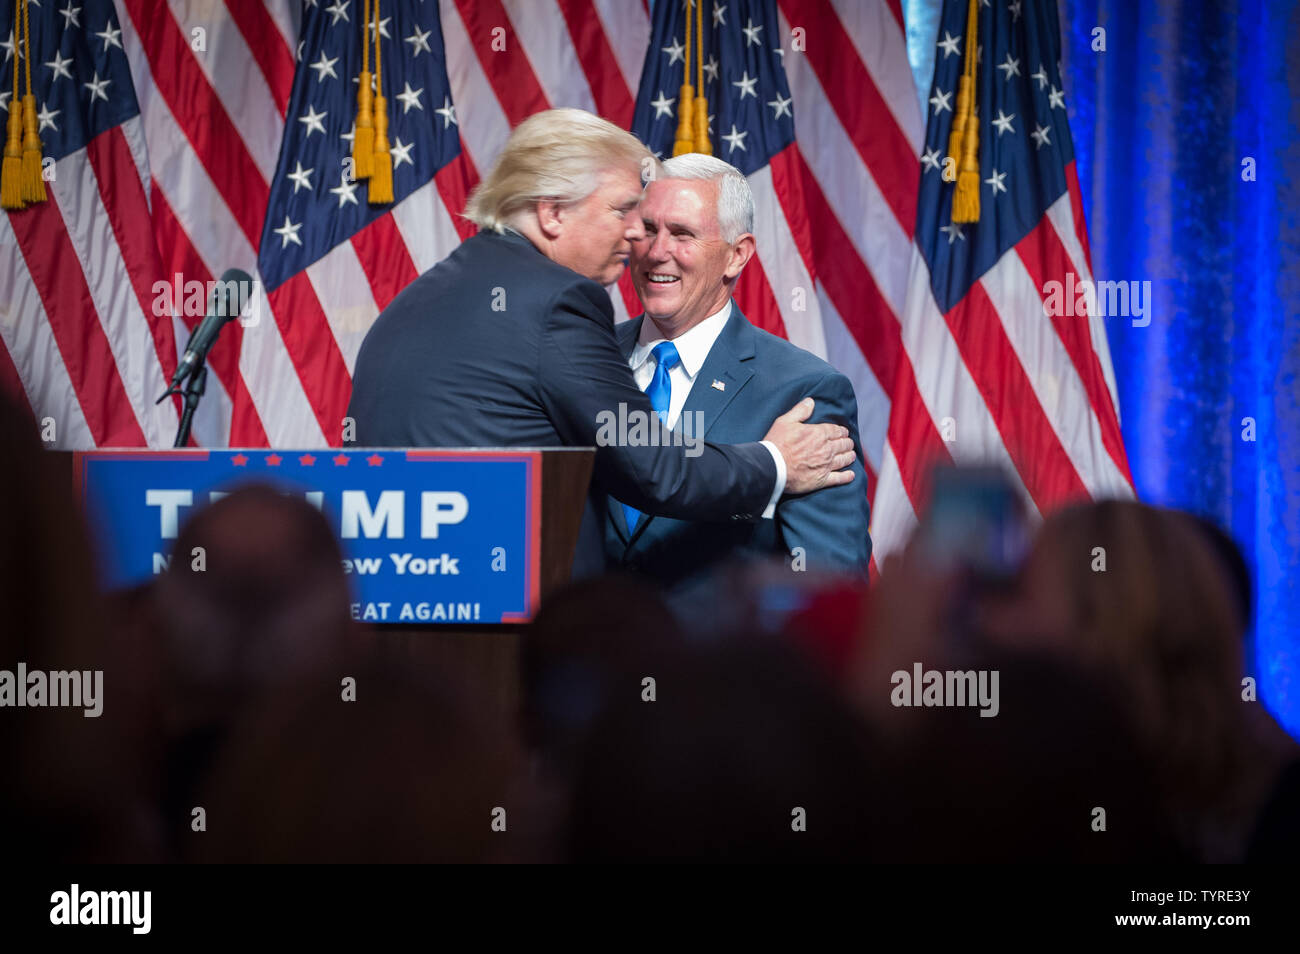 Presunto candidato repubblicano per il presidente Donald Trump saluta la sua scelta per Vice Presidente Mike Pence in occasione di una conferenza stampa a New York Hilton sulla luglio 16, 2016 a New York City. Foto di Bryan R. Smith/UPI Foto Stock